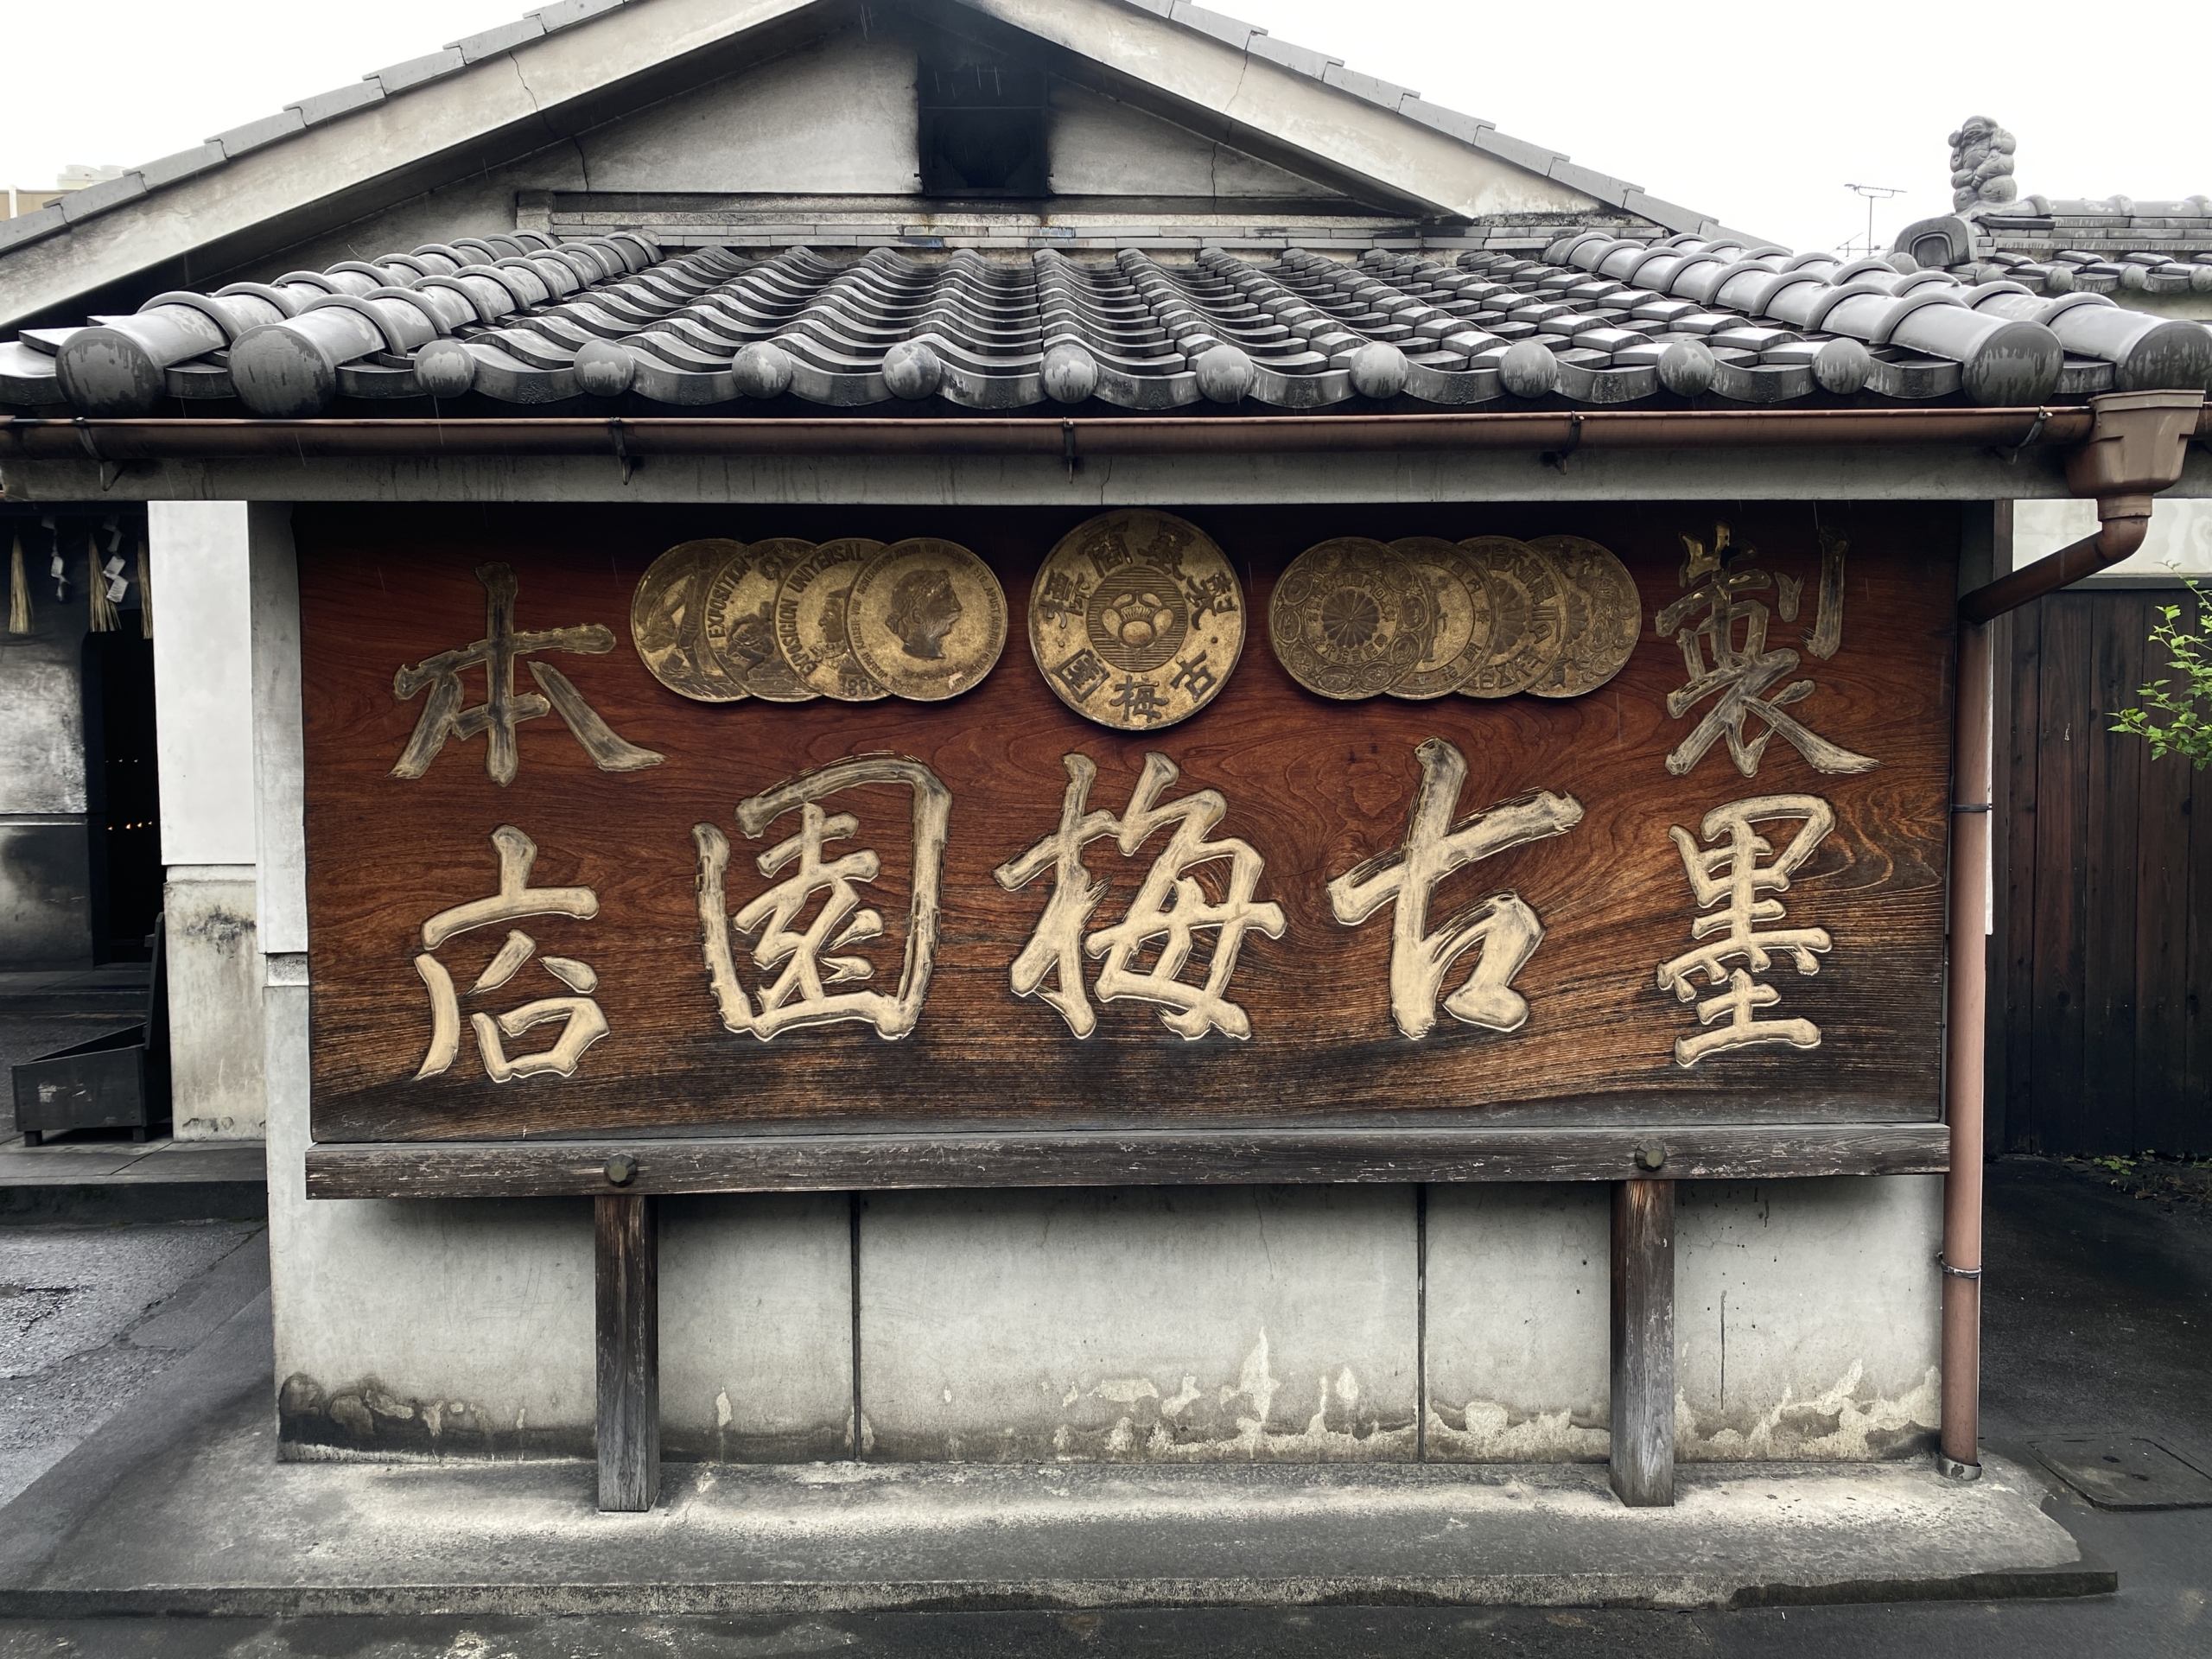 Cơ sở sản xuất mực Kobaien ở thành phố Nara, Nhật Bản. (Ảnh: Đăng dưới sự cho phép của Tập đoàn ICHI, Nhật Bản)